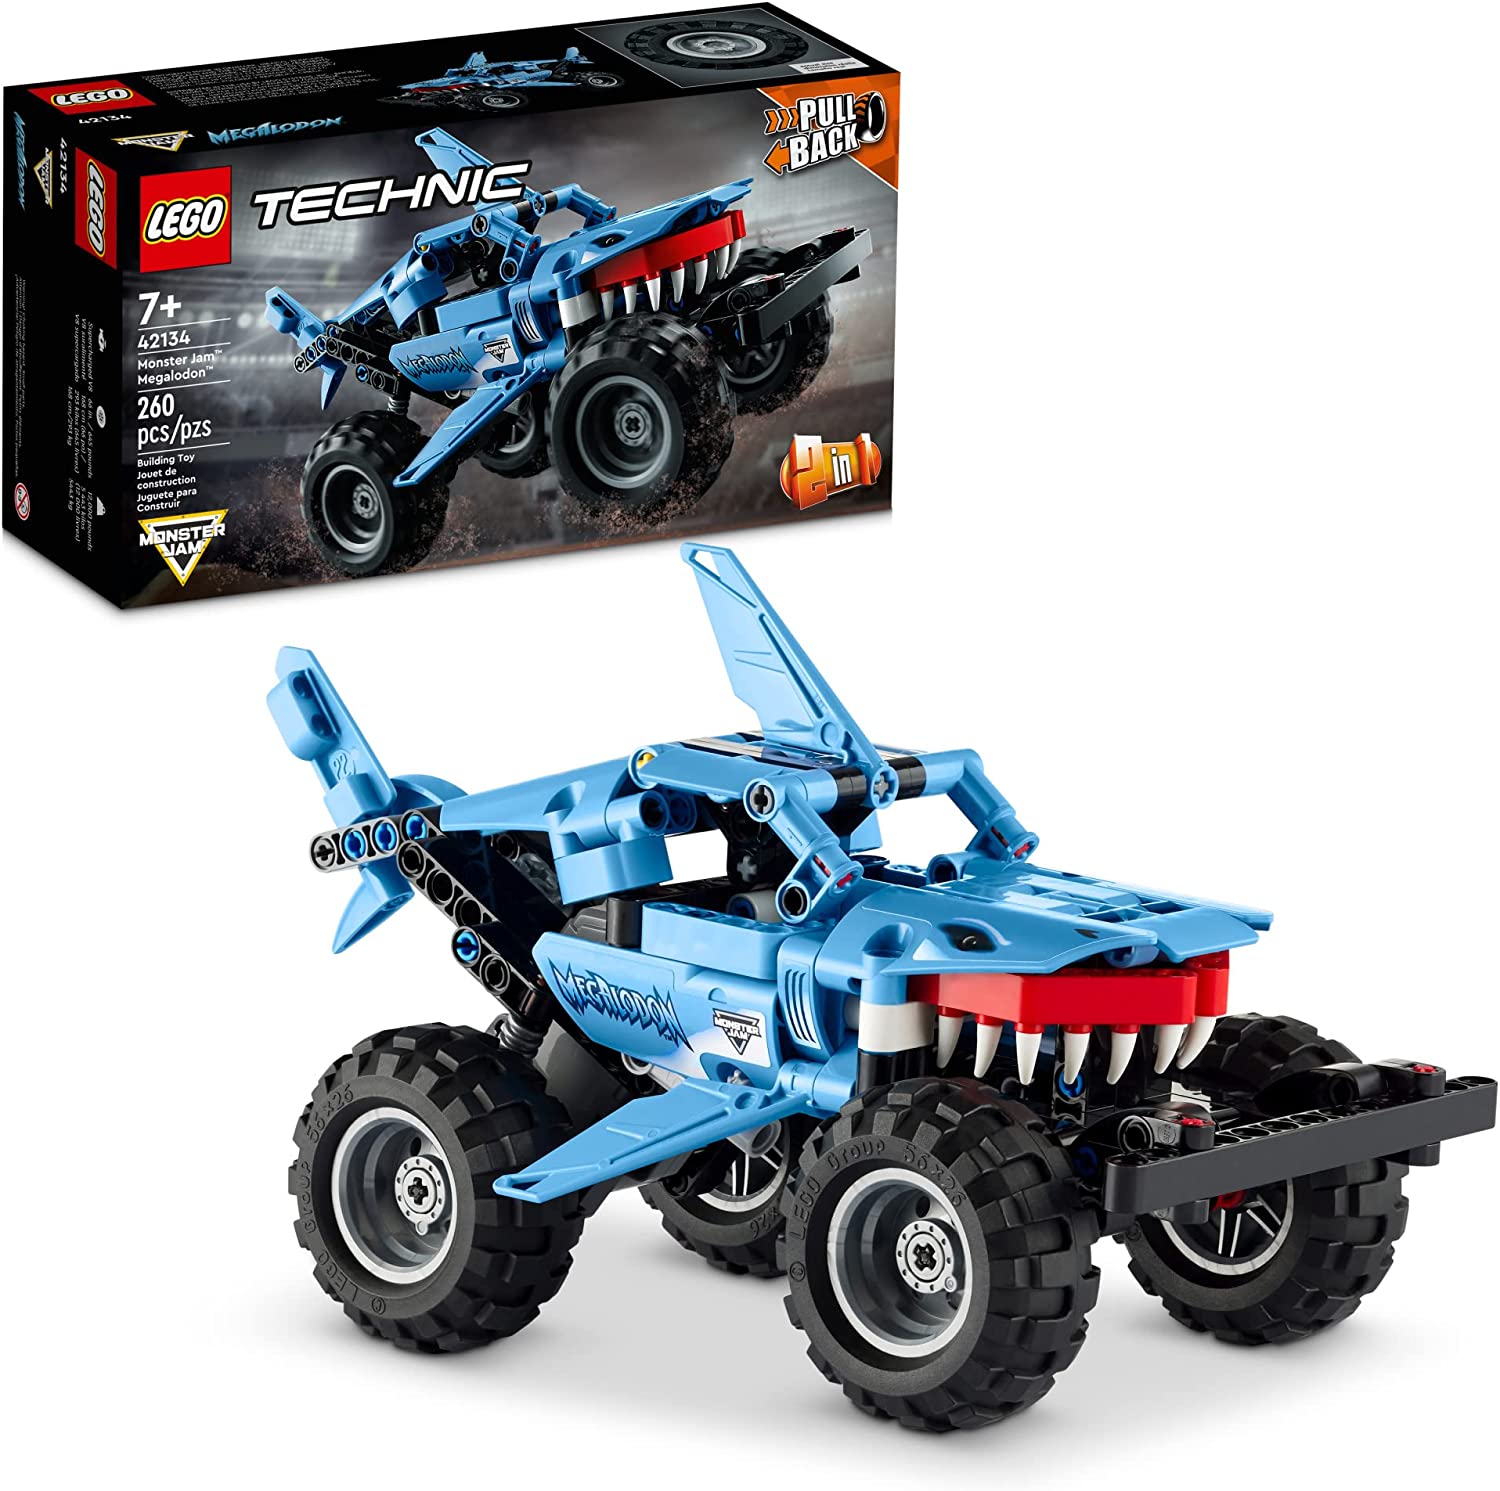 260 Pc. LEGO Technic Monster Jam Megalodon Model Building Kit (42134) $15.99 + Free Ship w/Prime